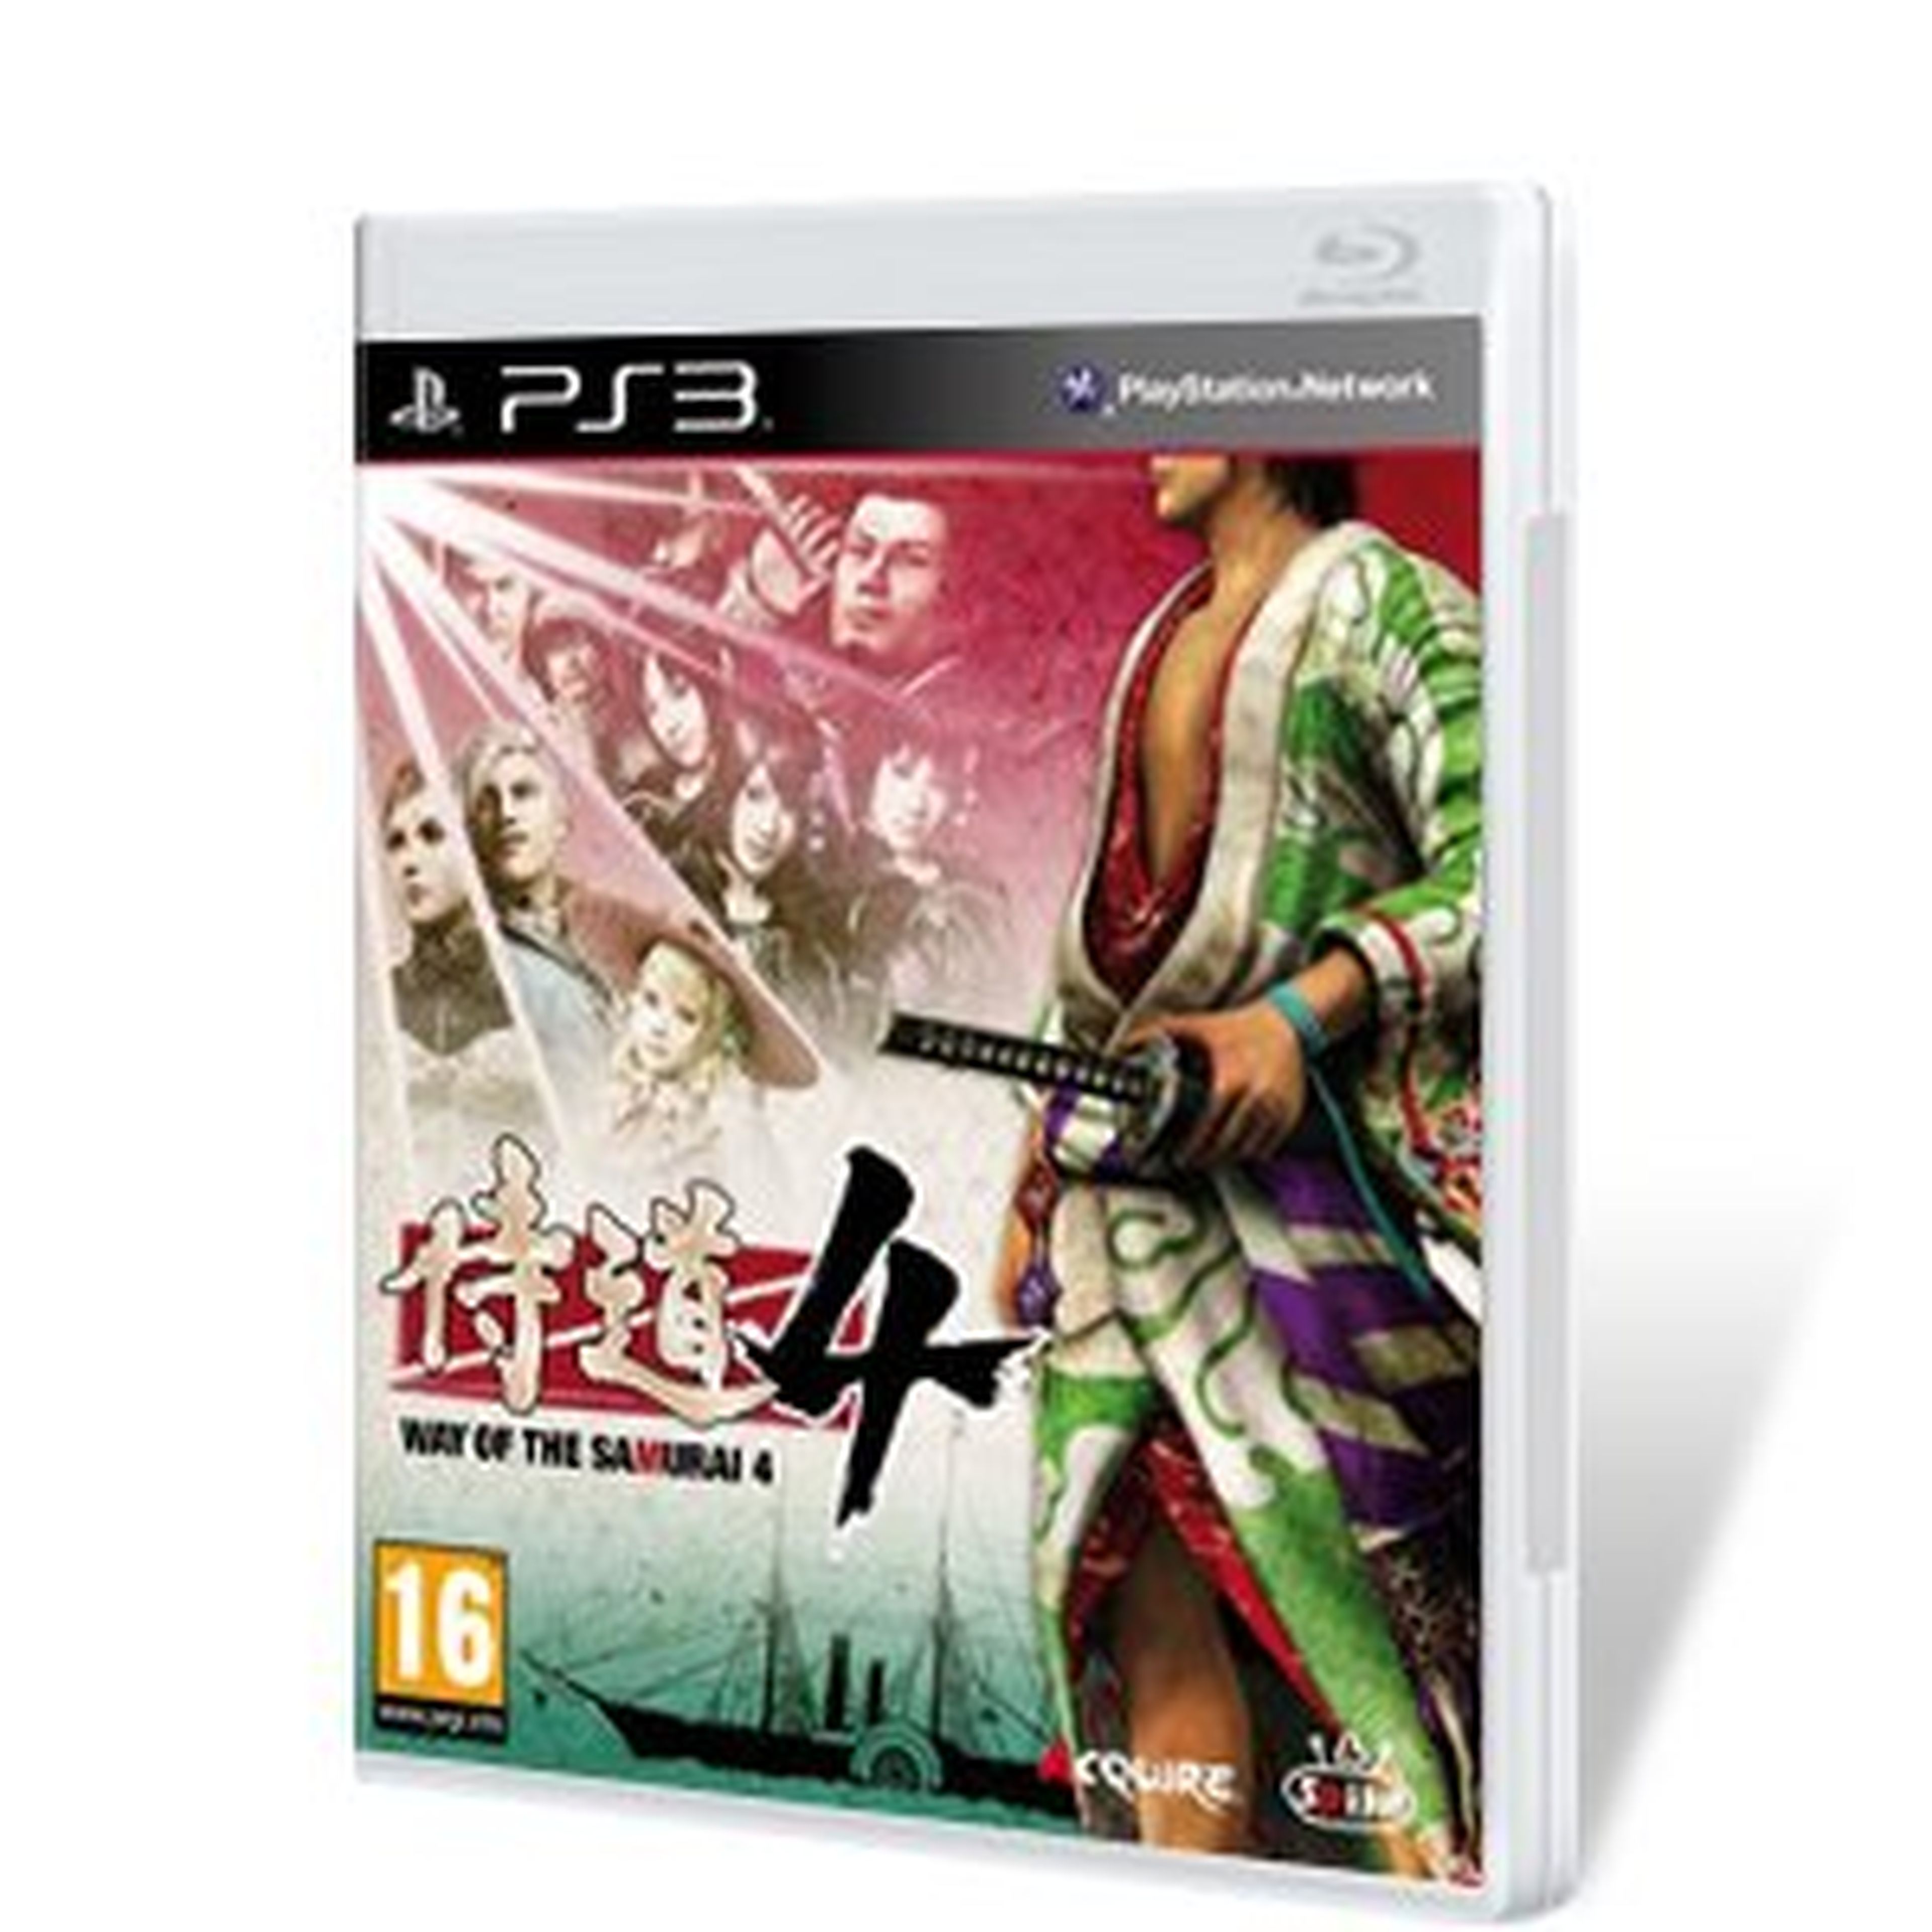 Way of the Samurai 4 para PS3